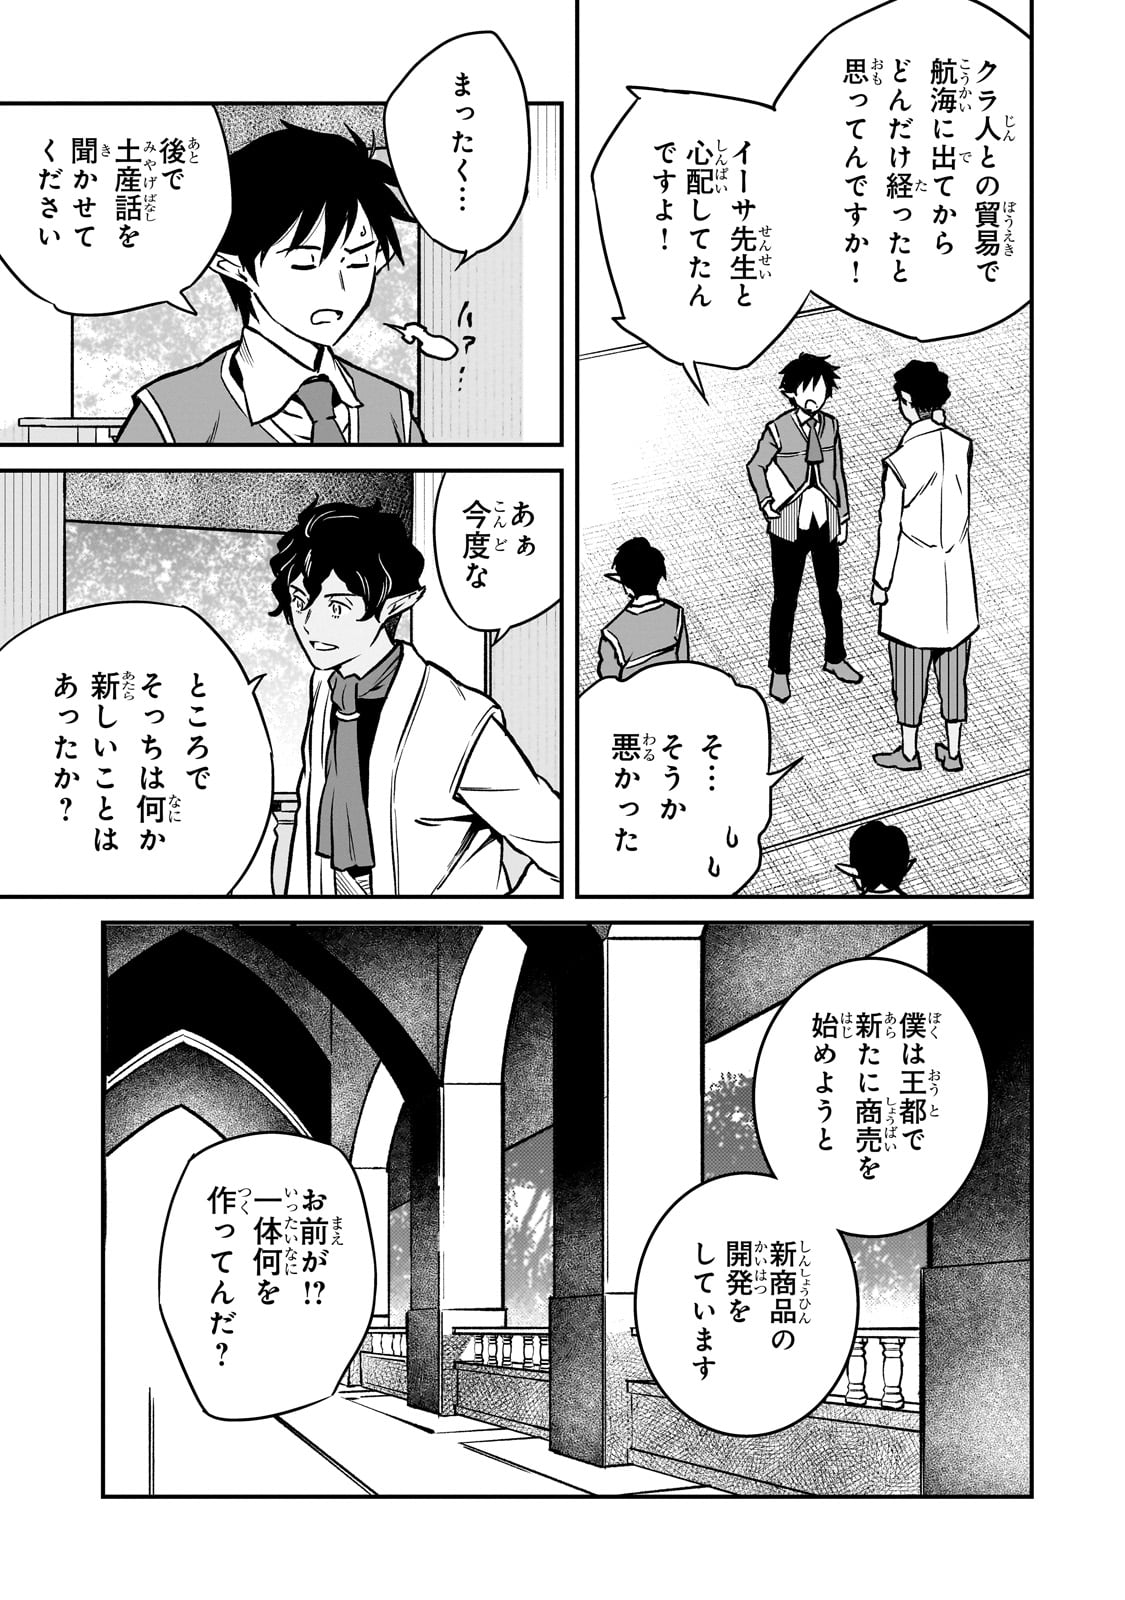 Horobi no Kuni no Seifukusha – Maou wa Sekai wo Seifuku suru you desu - Chapter 22 - Page 11